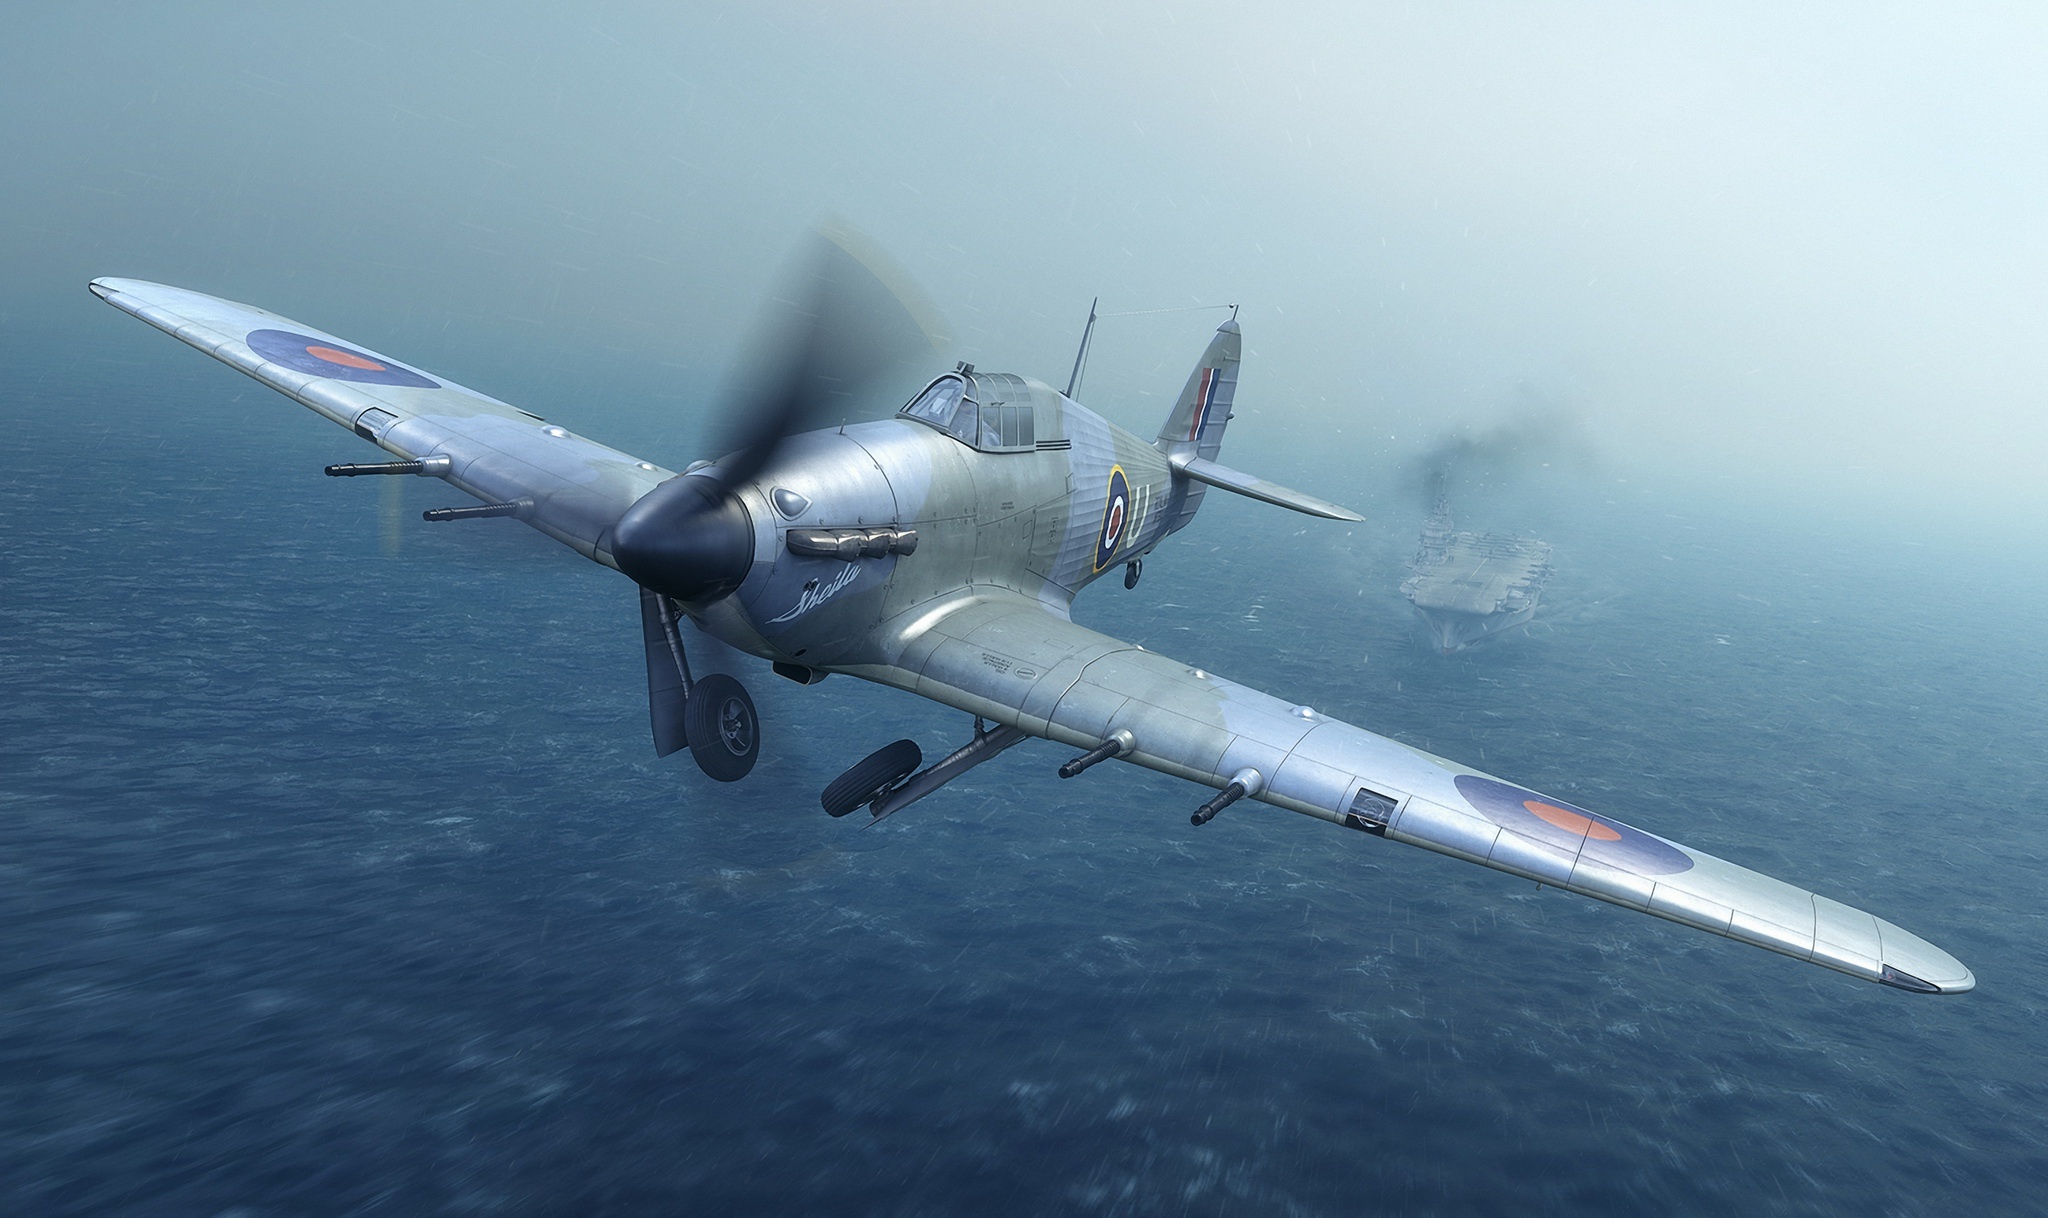 Hawker Hurricane aircraft, HD wallpapers, Historical background, Warbird beauty, 2050x1220 HD Desktop